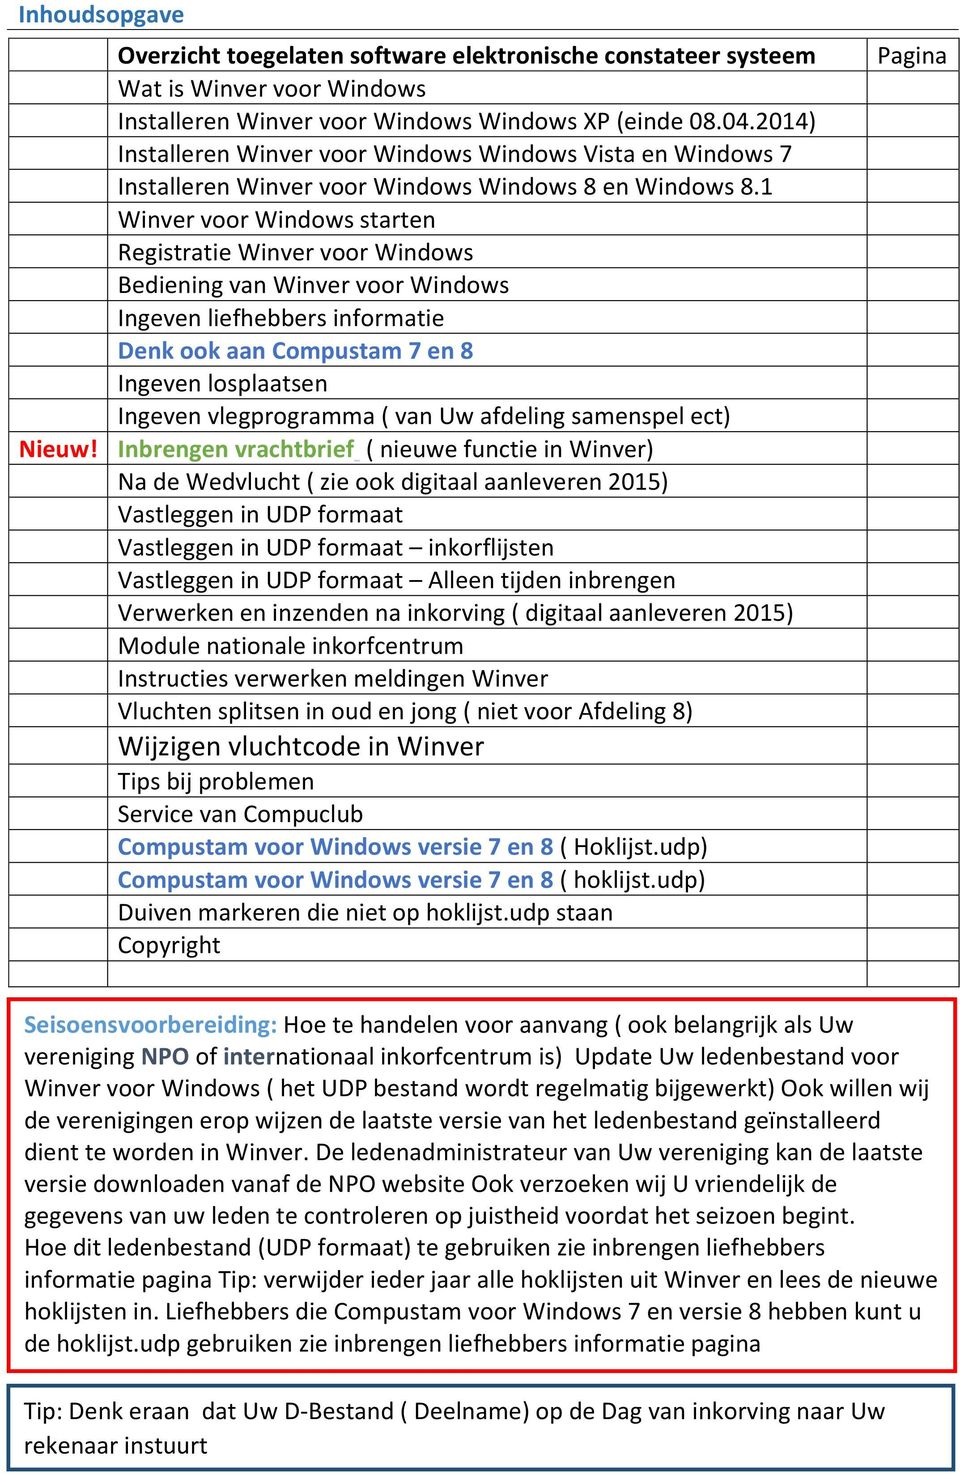 1 Winver voor Windows starten Registratie Winver voor Windows Bediening van Winver voor Windows Ingeven liefhebbers informatie Denk ook aan Compustam 7 en 8 Ingeven losplaatsen Ingeven vlegprogramma